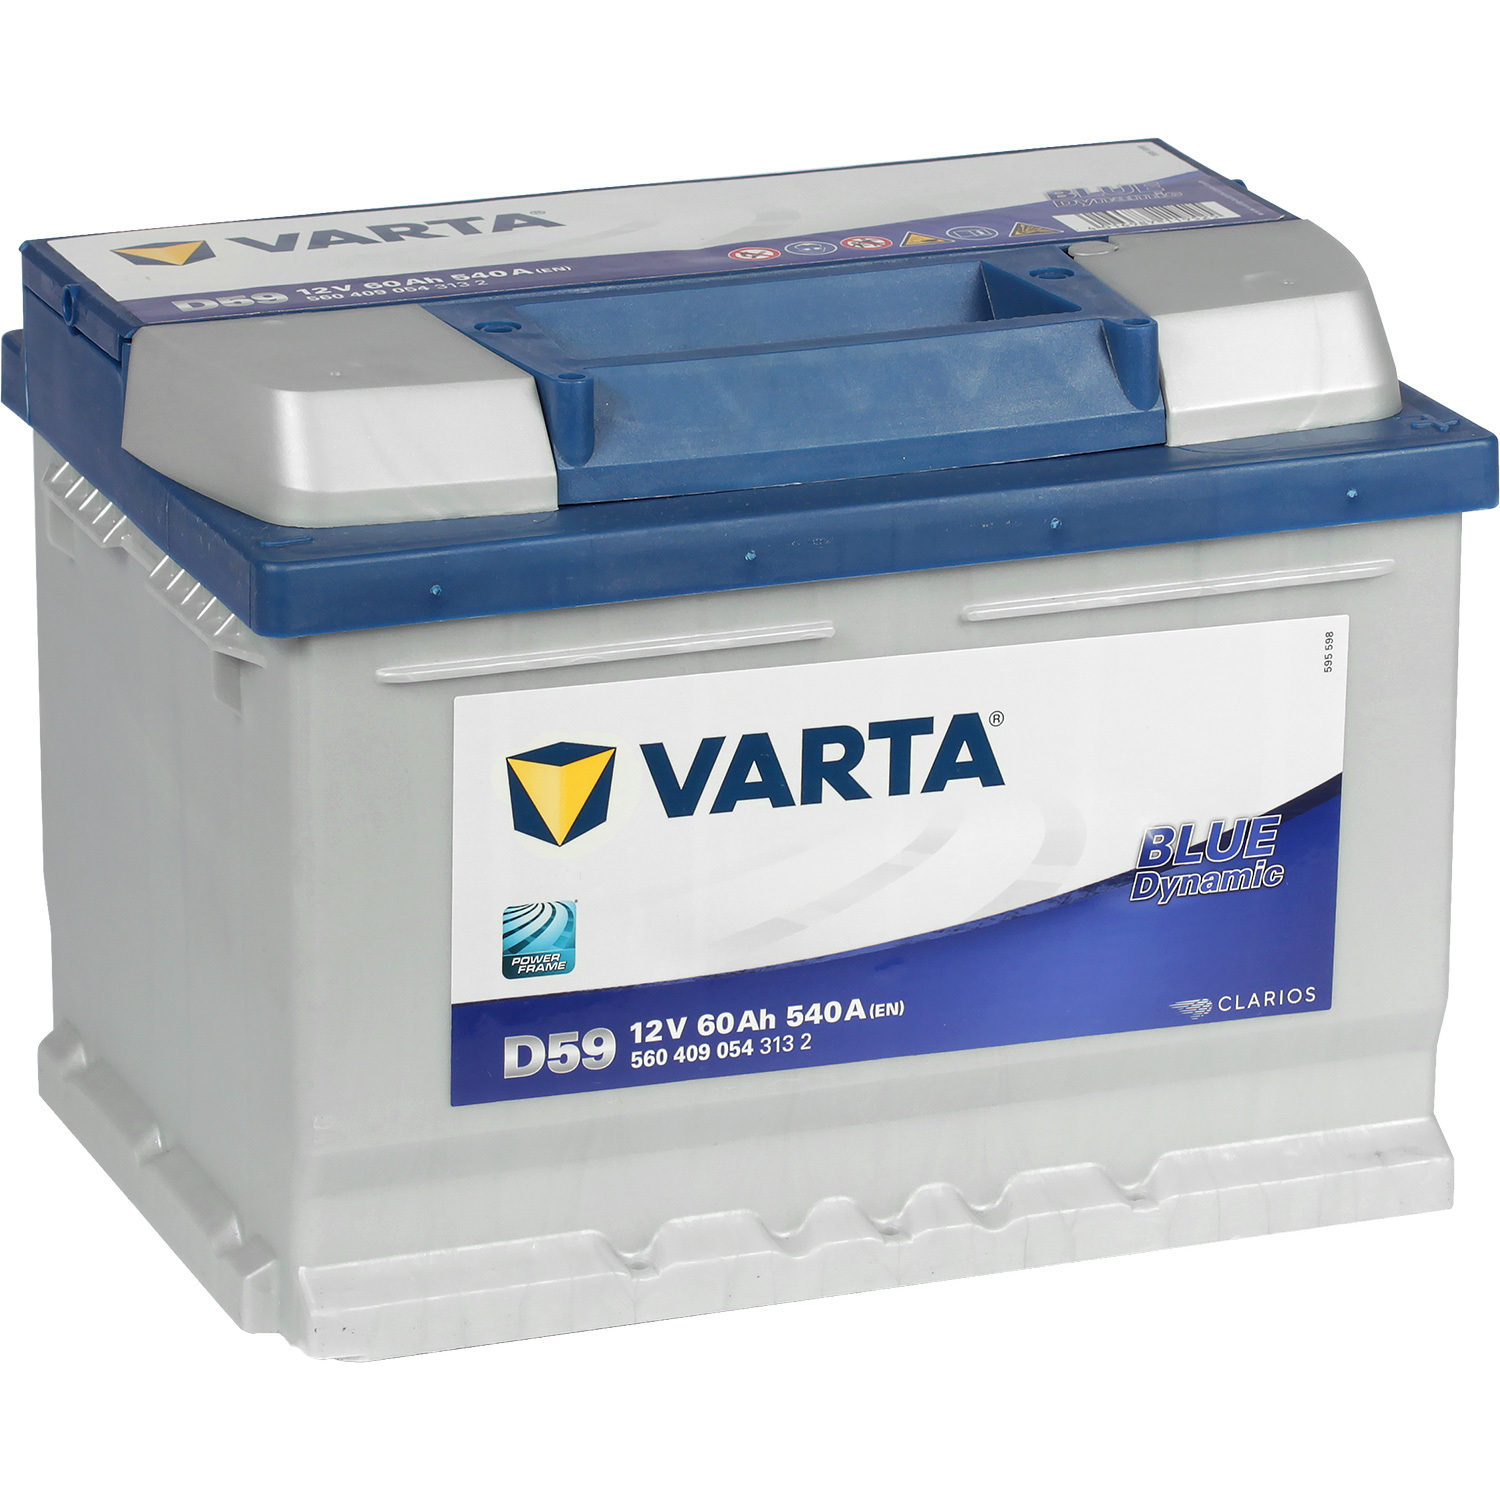 Varta Автомобильный аккумулятор Varta Blue Dynamic D59 60 Ач обратная полярность LB2 varta автомобильный аккумулятор varta blue dynamic b34 45 ач прямая полярность b24r